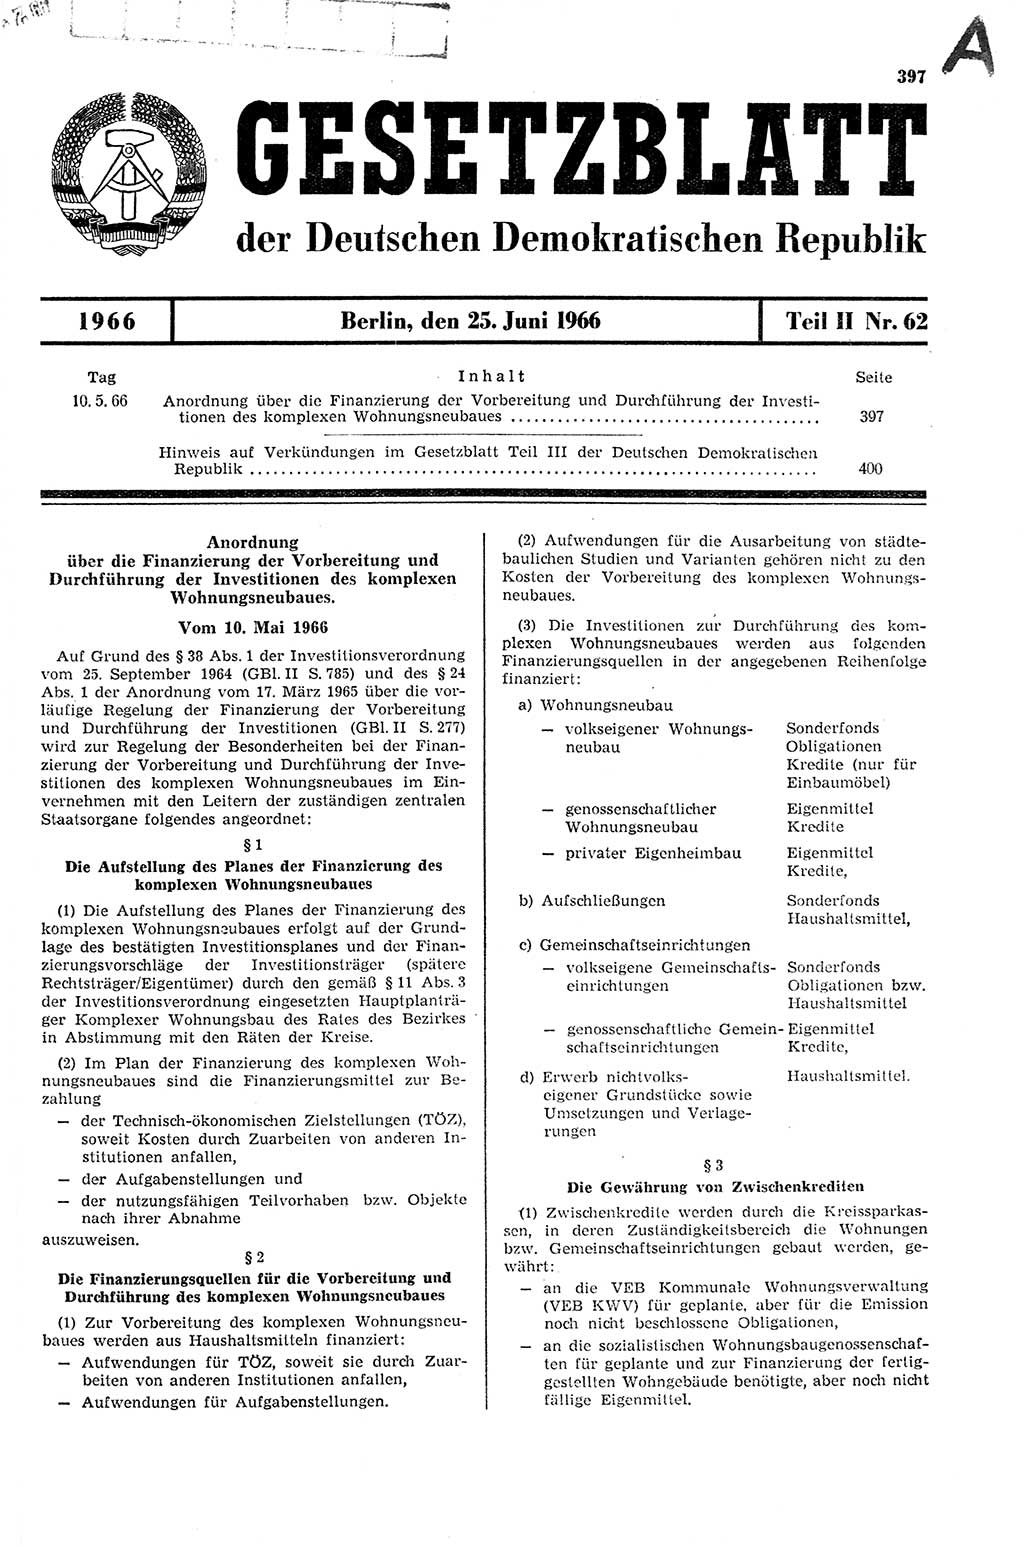 Gesetzblatt (GBl.) der Deutschen Demokratischen Republik (DDR) Teil ⅠⅠ 1966, Seite 397 (GBl. DDR ⅠⅠ 1966, S. 397)